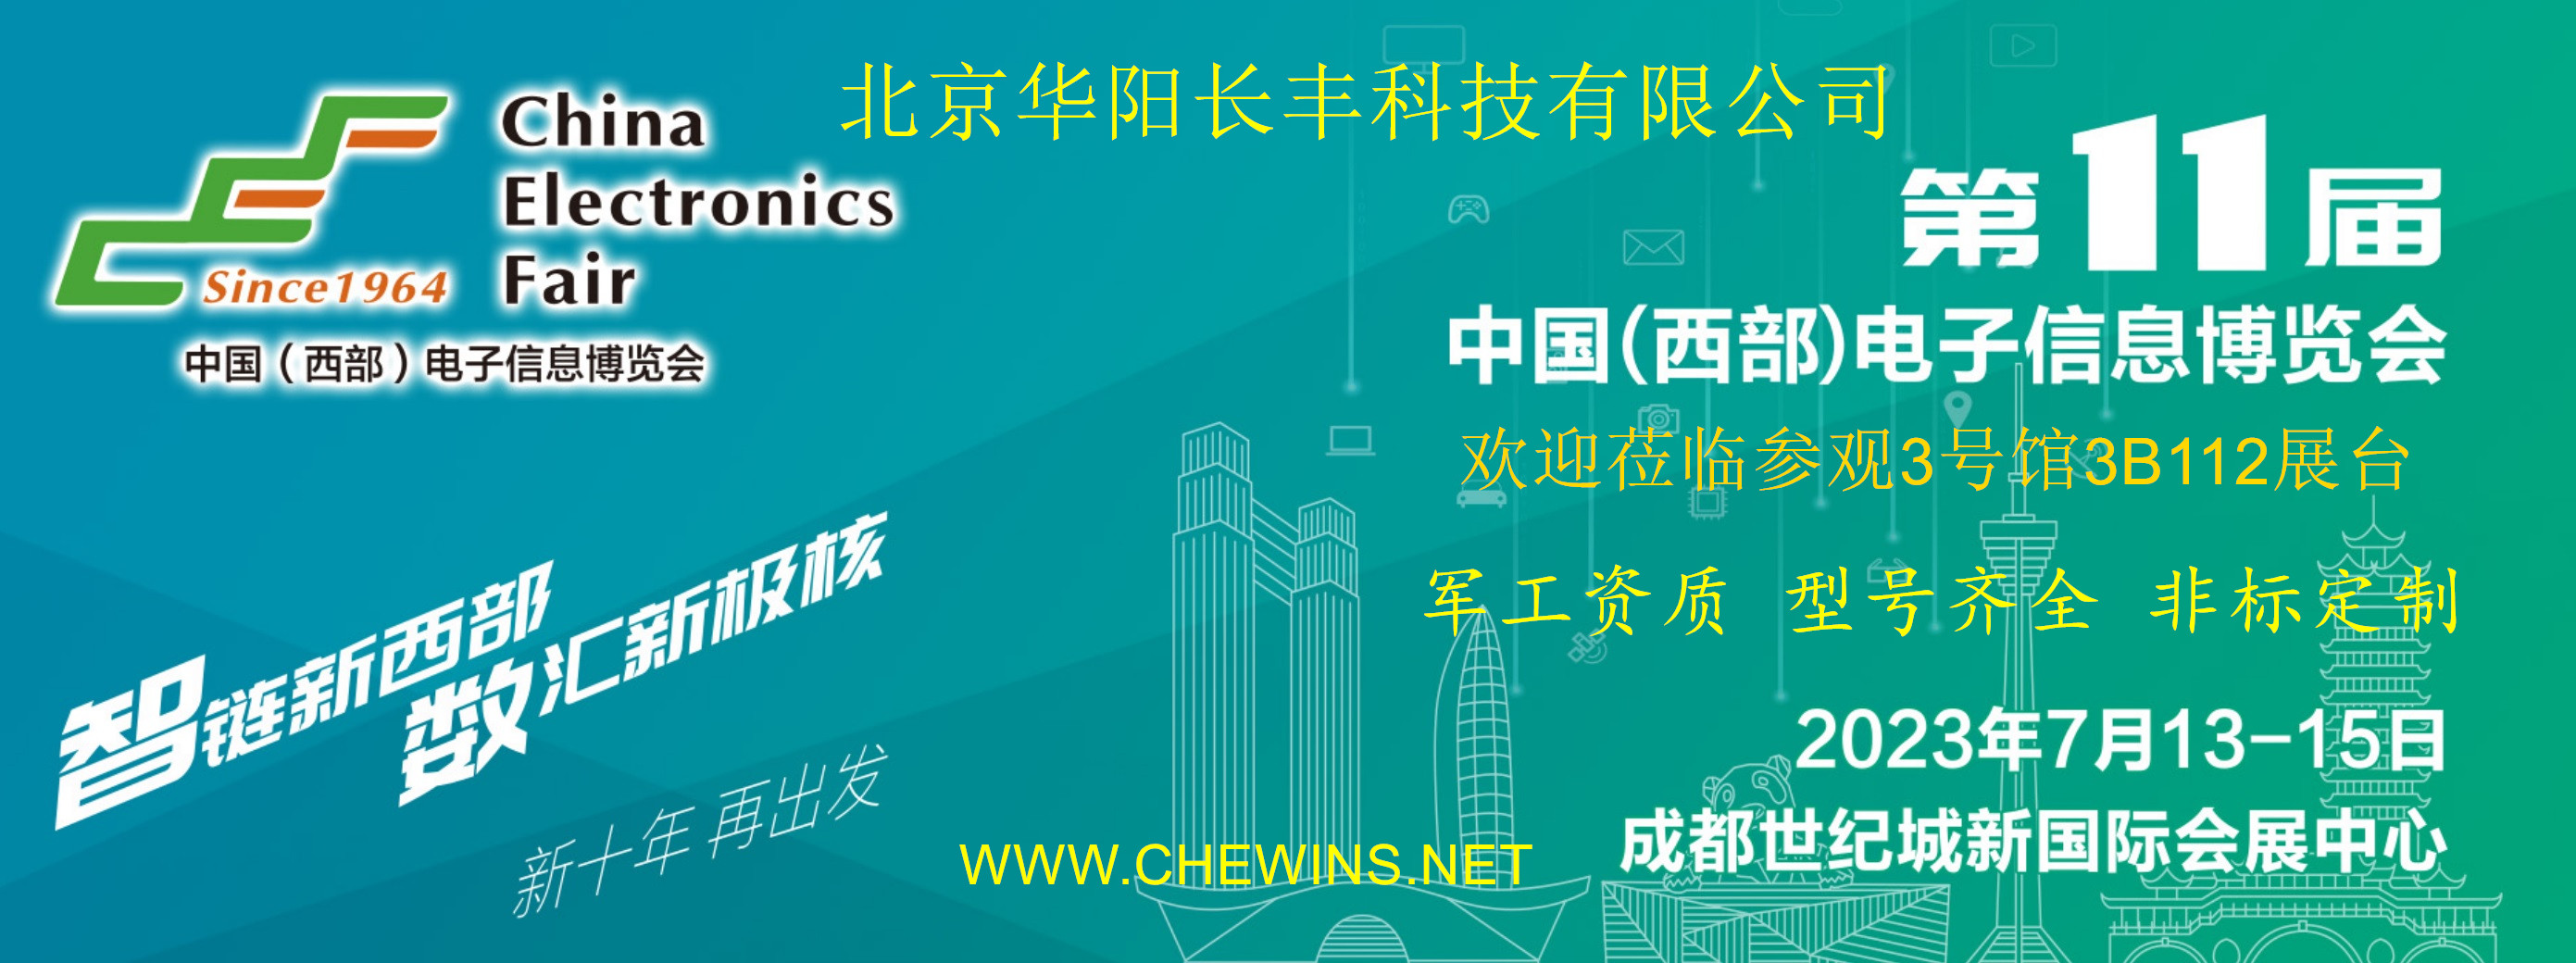 华阳长丰军用电源应邀参加2023年第11届中国(西部)电子信息博览会